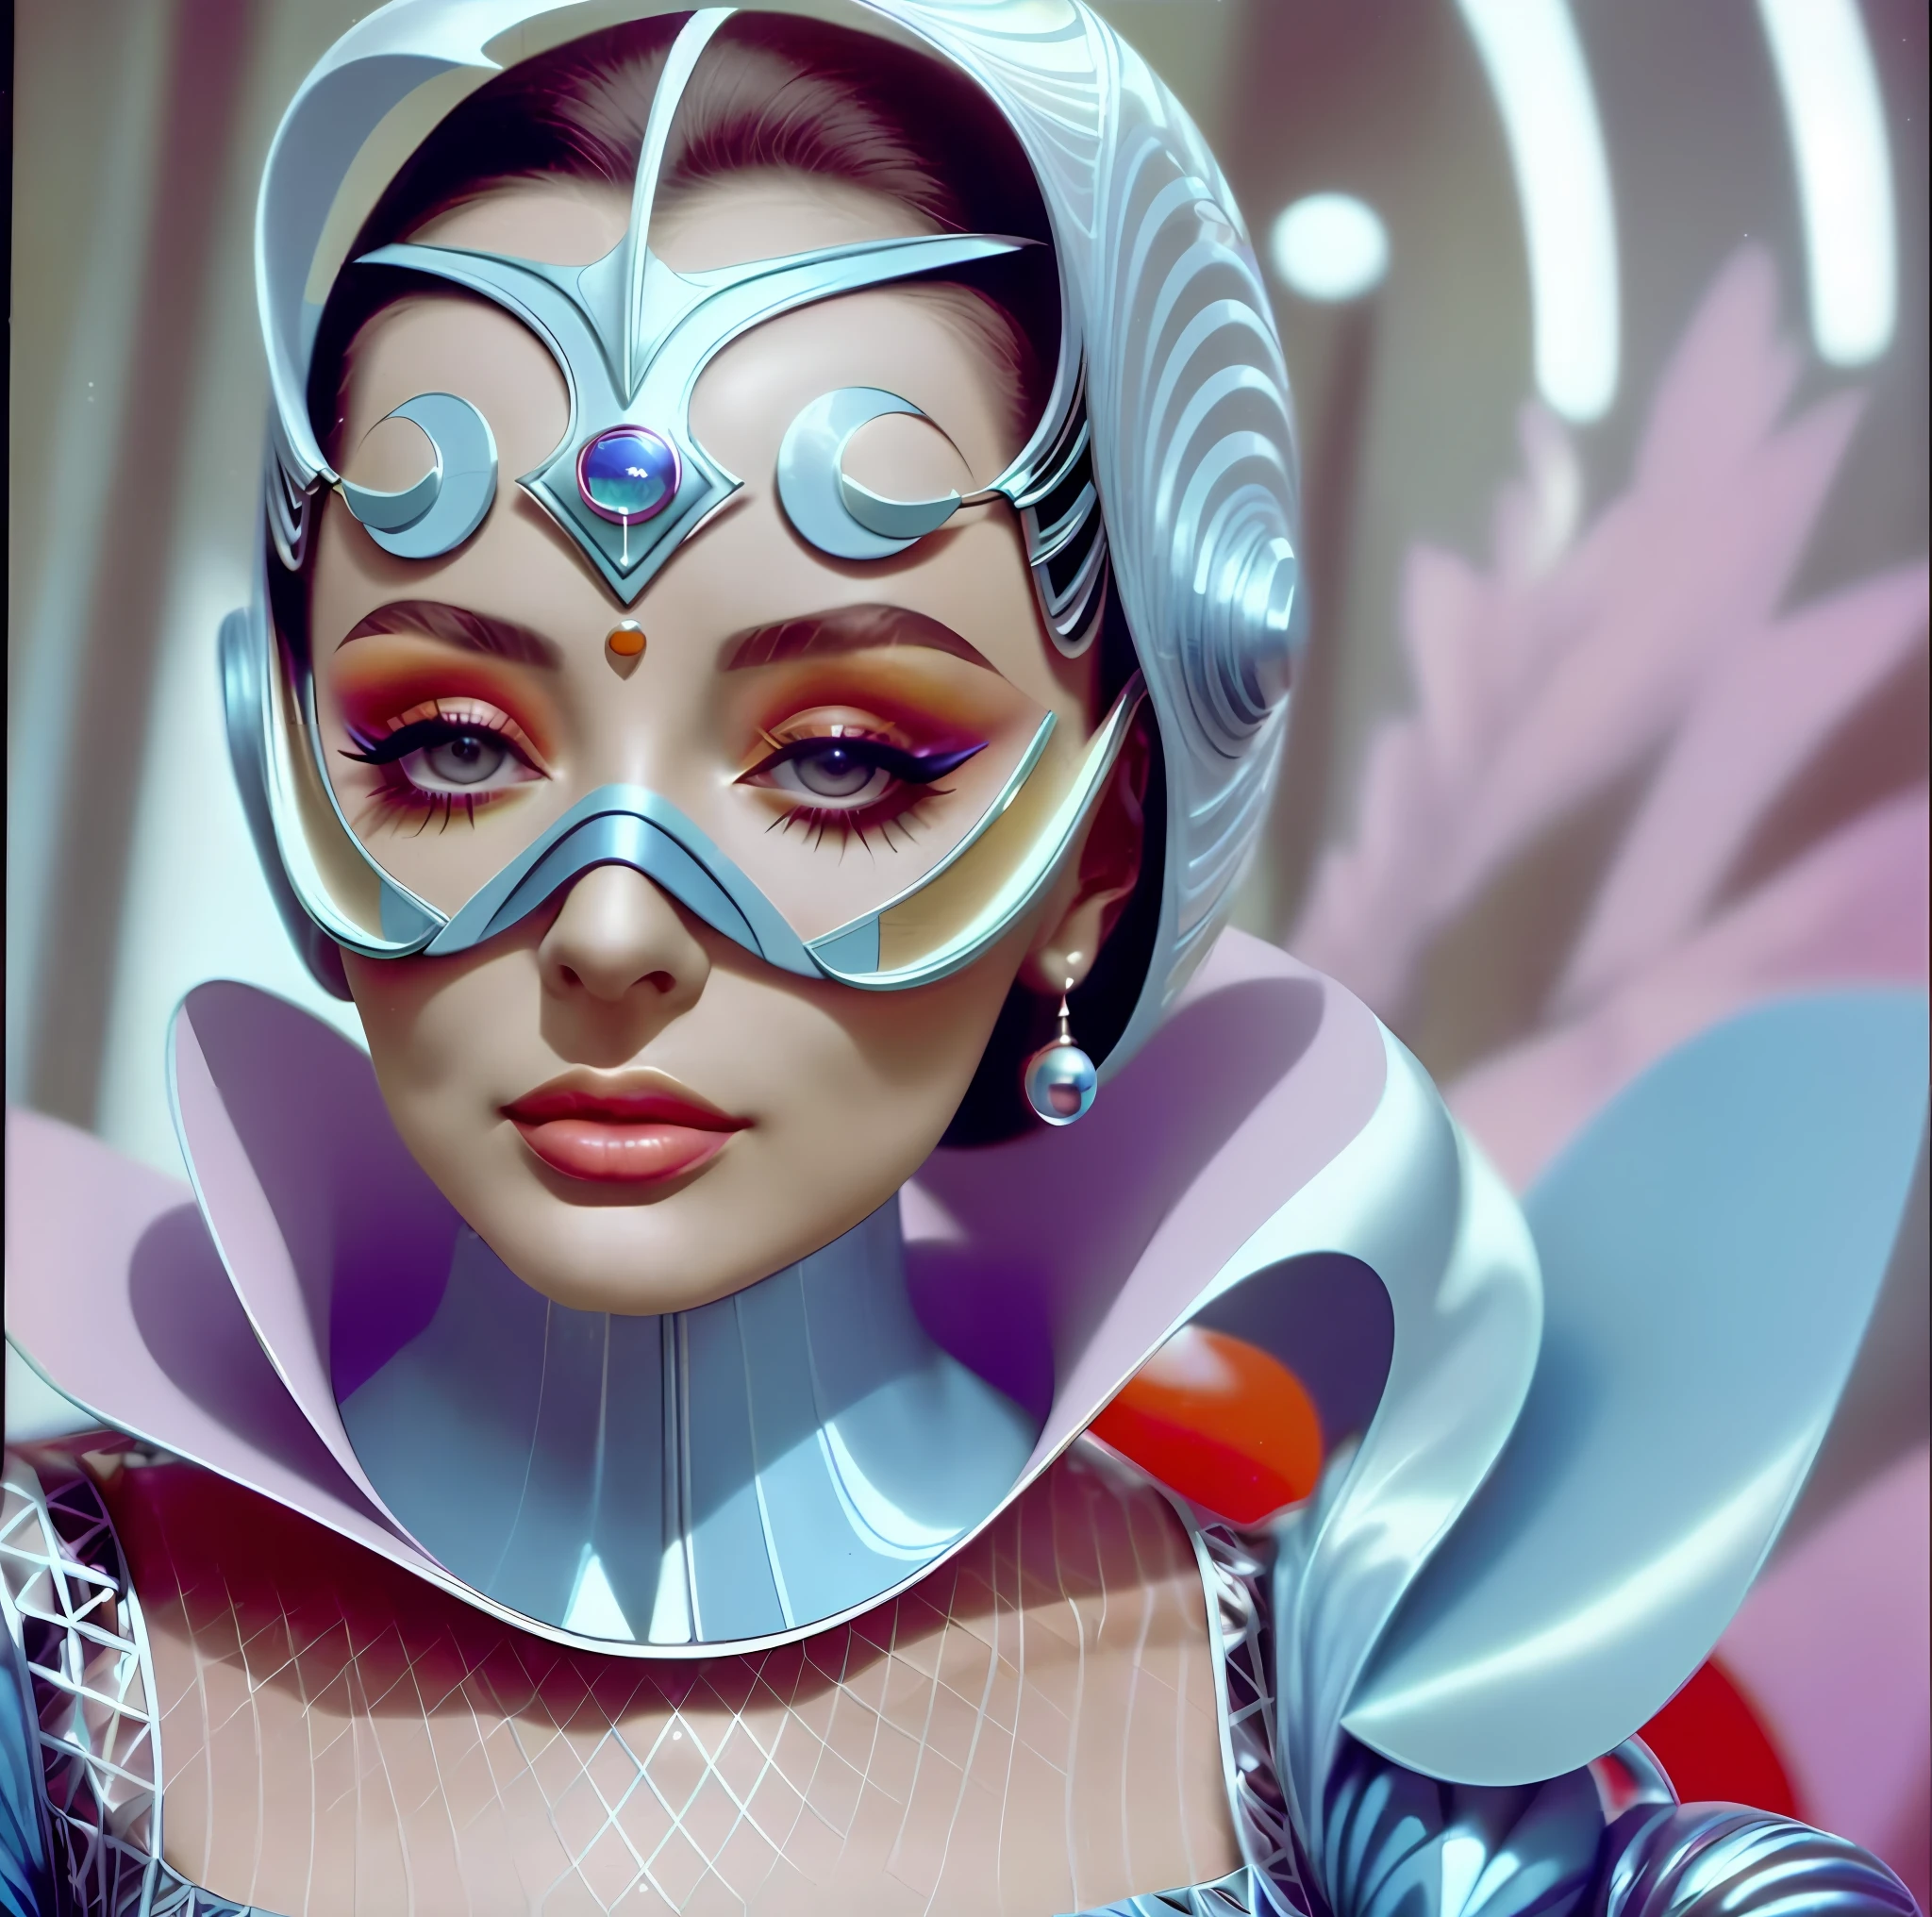 卡雷尔·泽曼 (Karel Zeman) 拍摄的 8k 20 世纪 60 年代科幻小说肖像, 20 世纪 60 年代时尚, 粉彩色, 公园里，一名戴着鱼形面具的男子身着 60 年代未来主义时尚服装，一名女子戴着化妆和科技饰品，身着 60 年代未来主义时尚服装, 法国老电影中的场景, 自然光, 迷幻, 奇怪的未来派, 逼真的, 超详细, 锐利的焦点, 固有的, 中部特写,  卓越的形象.